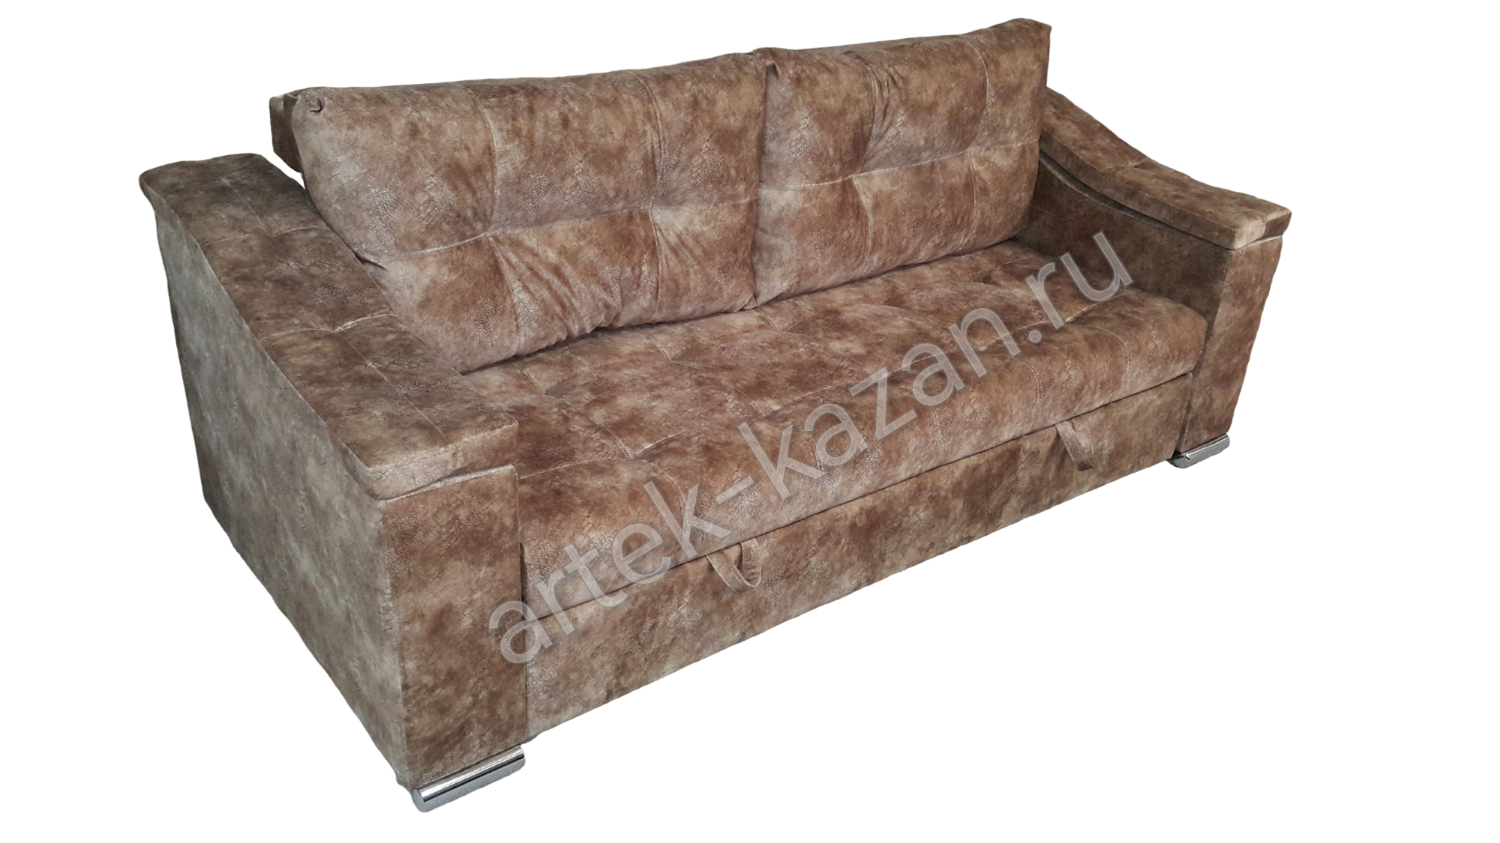 Мини диван на выкатном механизме Миник фото № 28. Купить недорогой диван по низкой цене от производителя можно у нас.